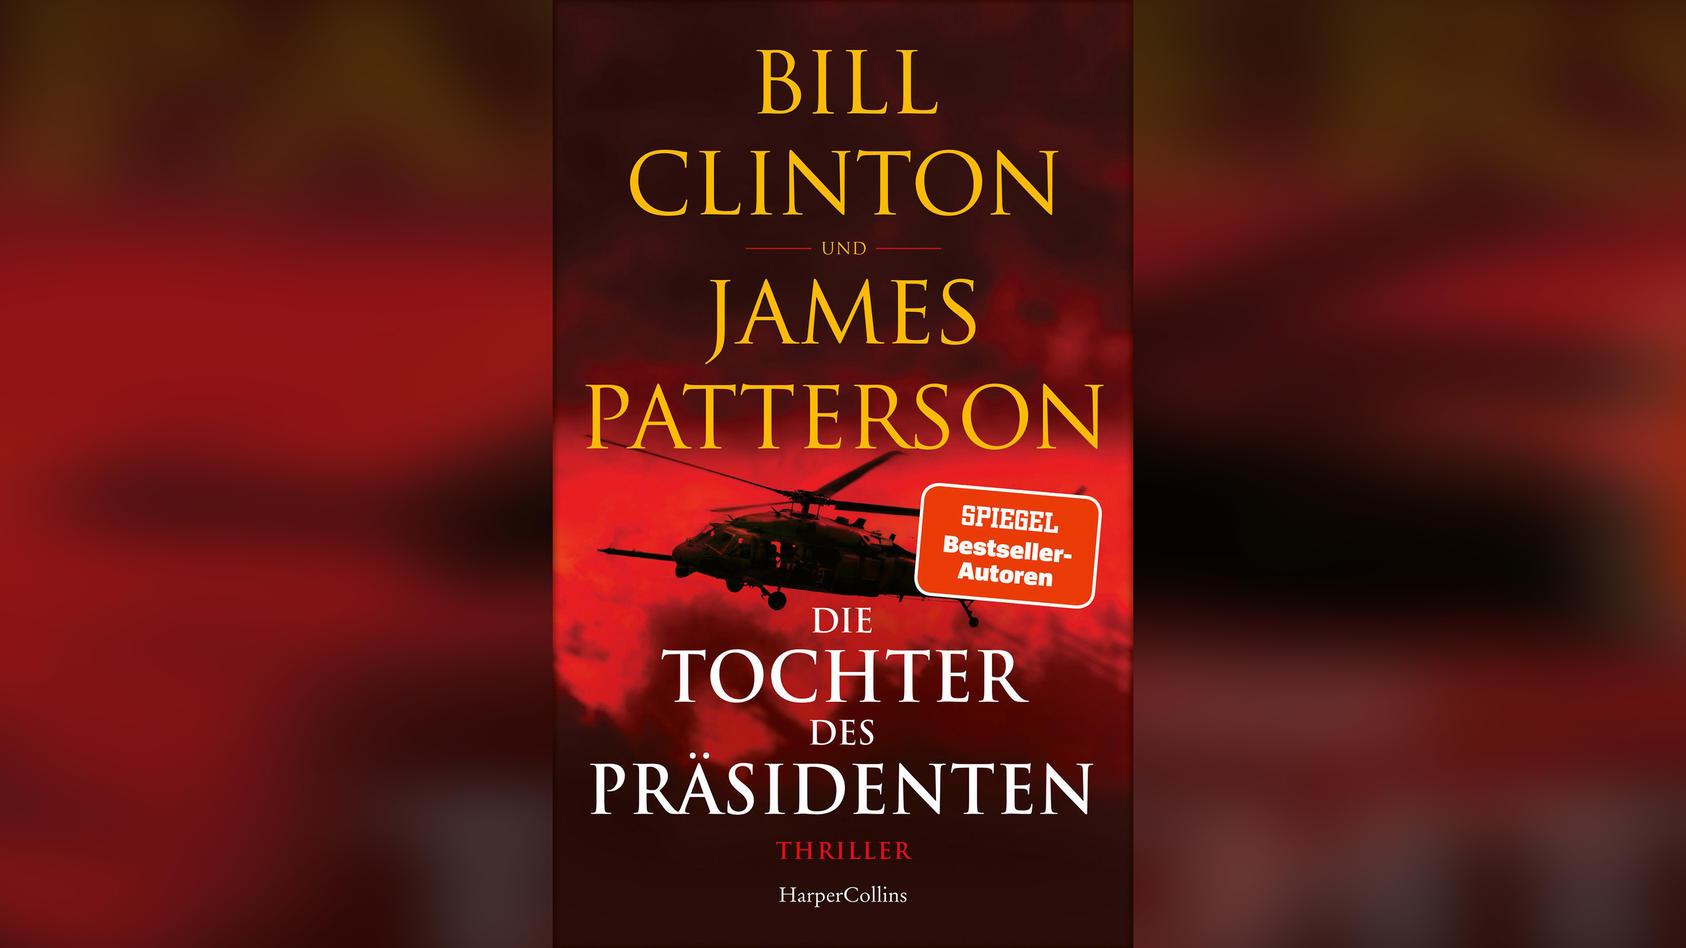 Thriller von James Patterson und Bill Clinton: Die Tochter des Präsidenten